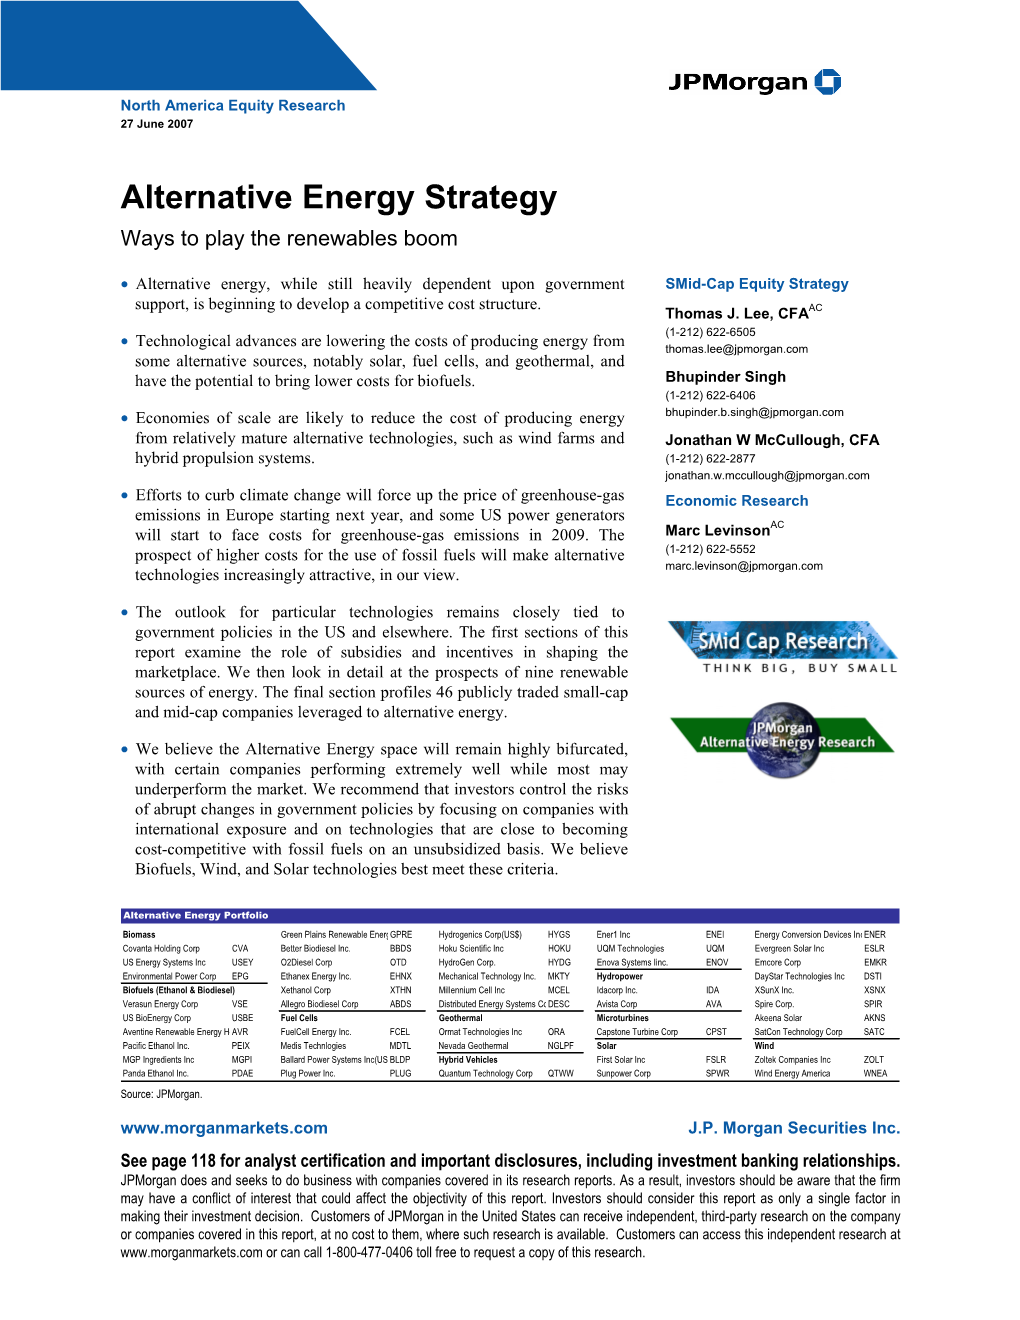 Alternative Energy Strategy